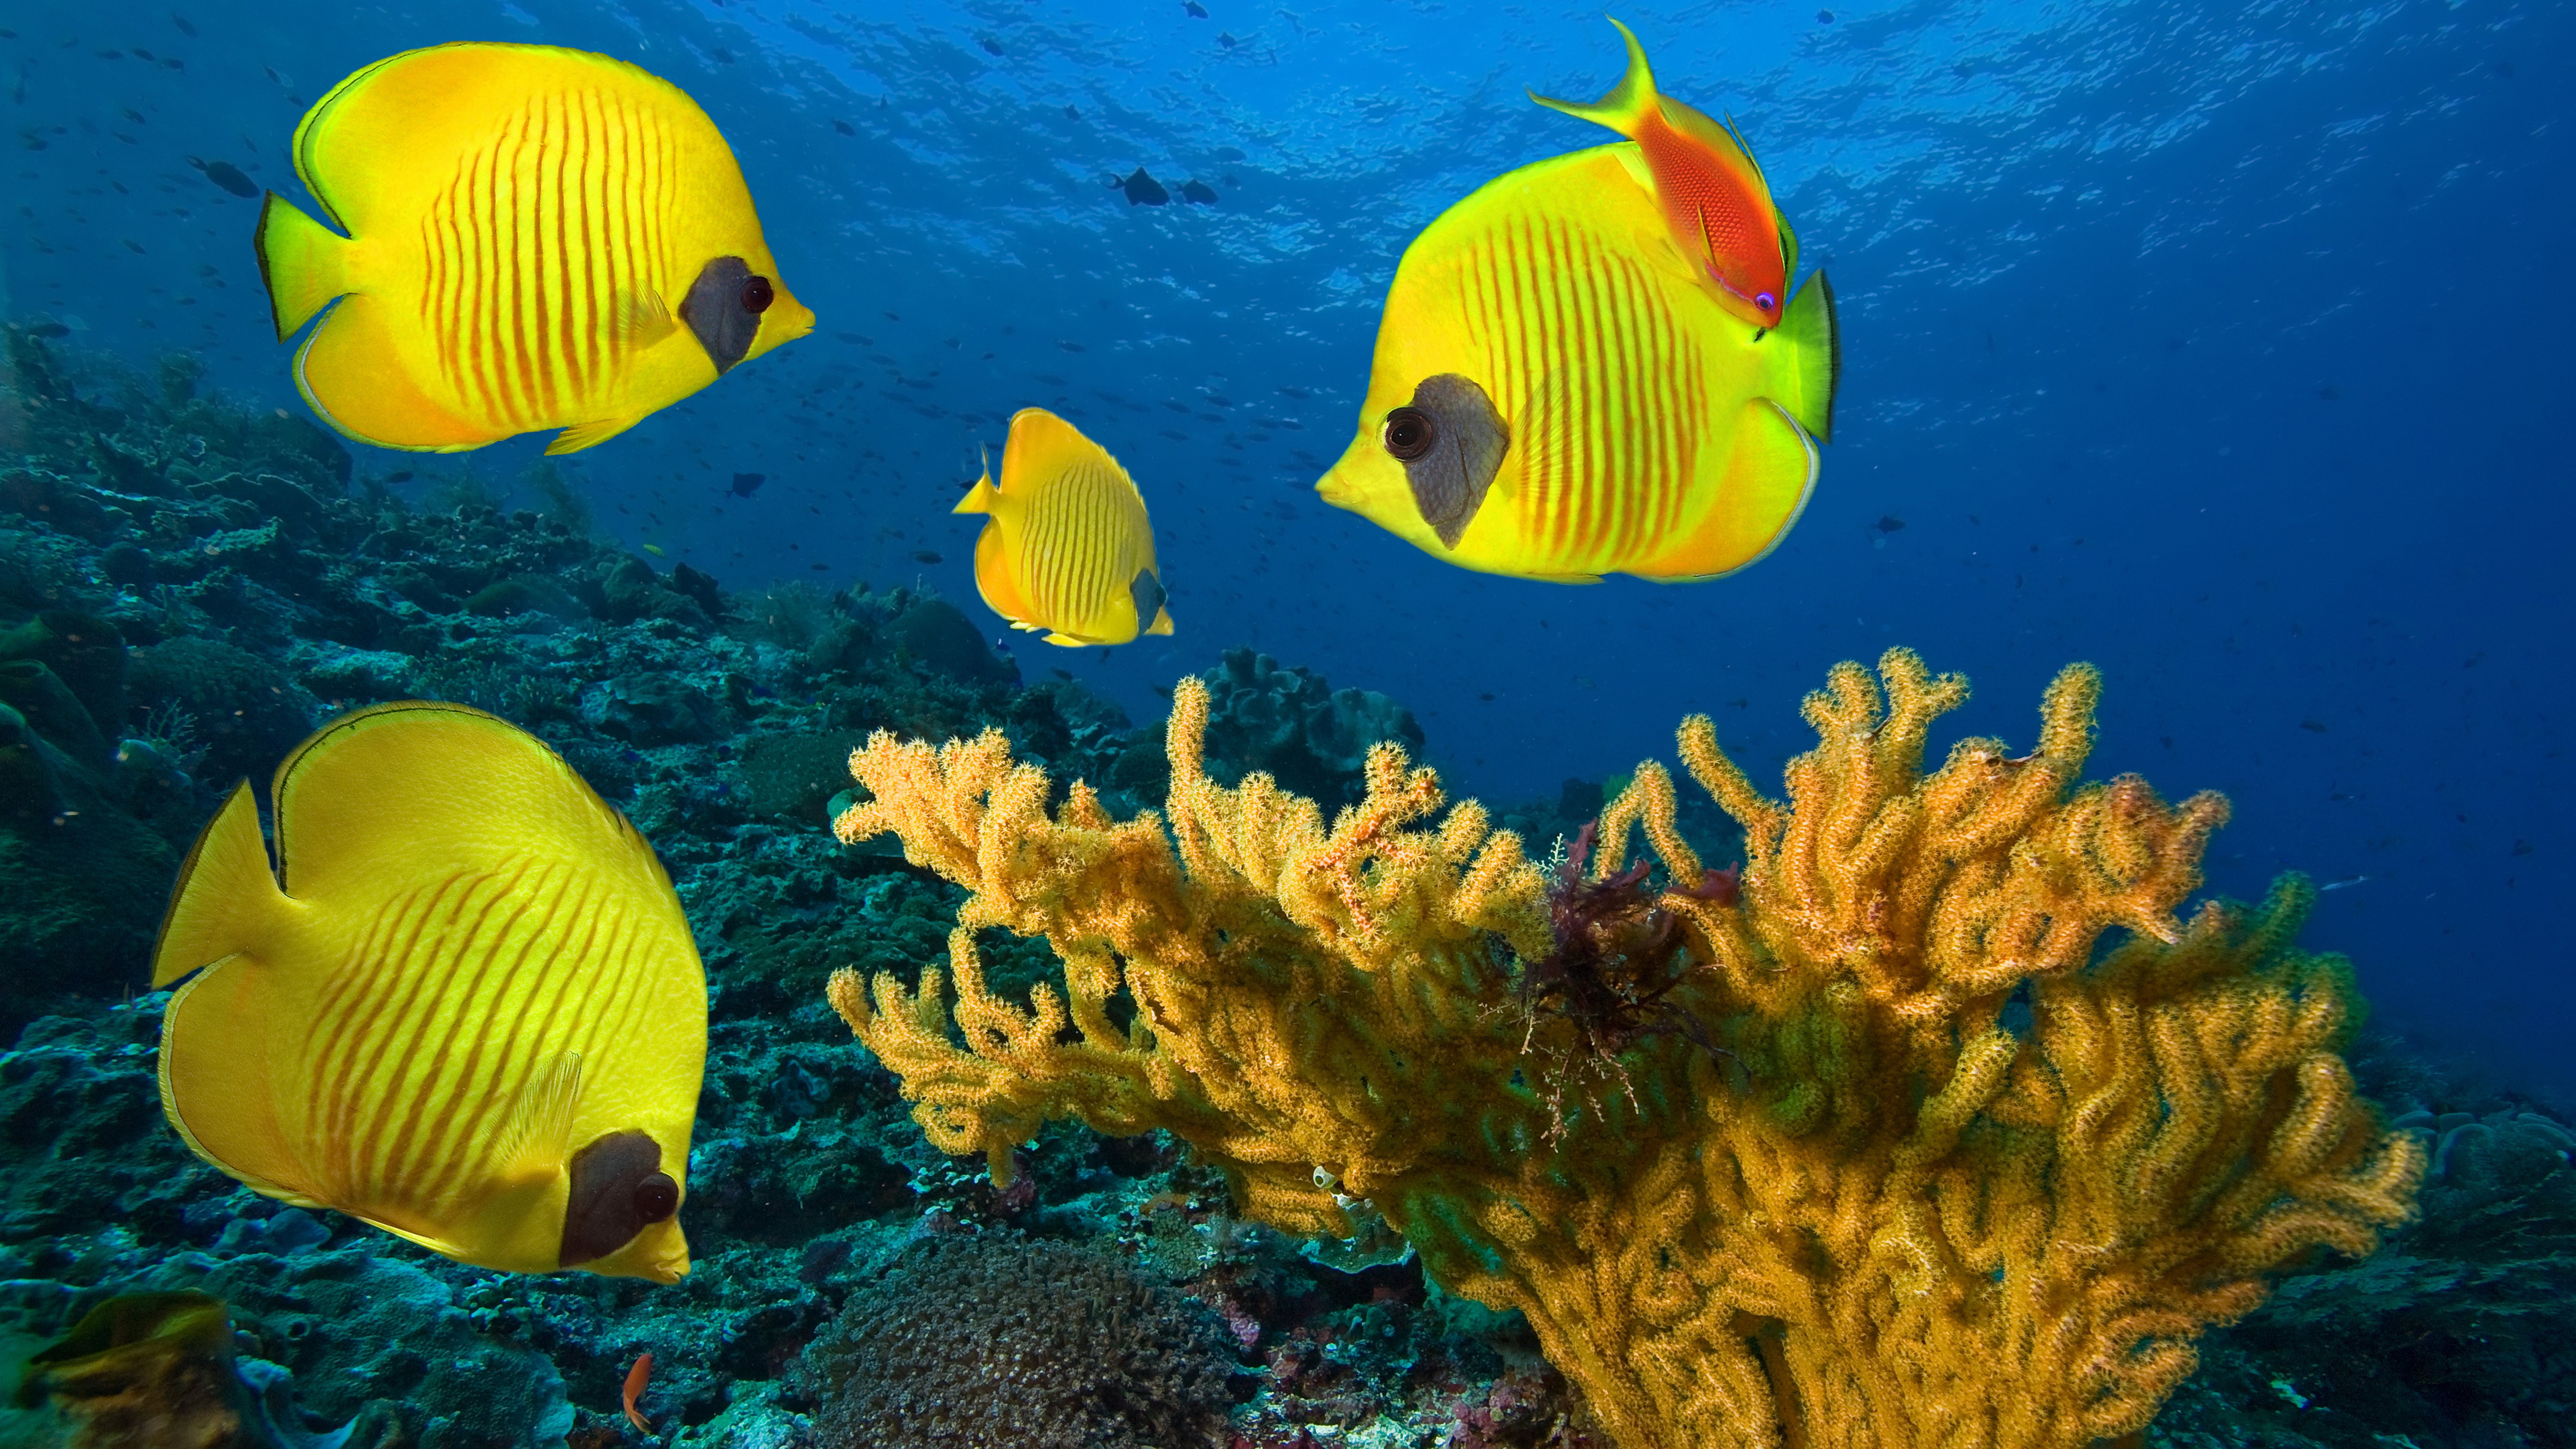 8К обои, подводный мир, желтые рыбки, океан, водоросли, коралловые рифы